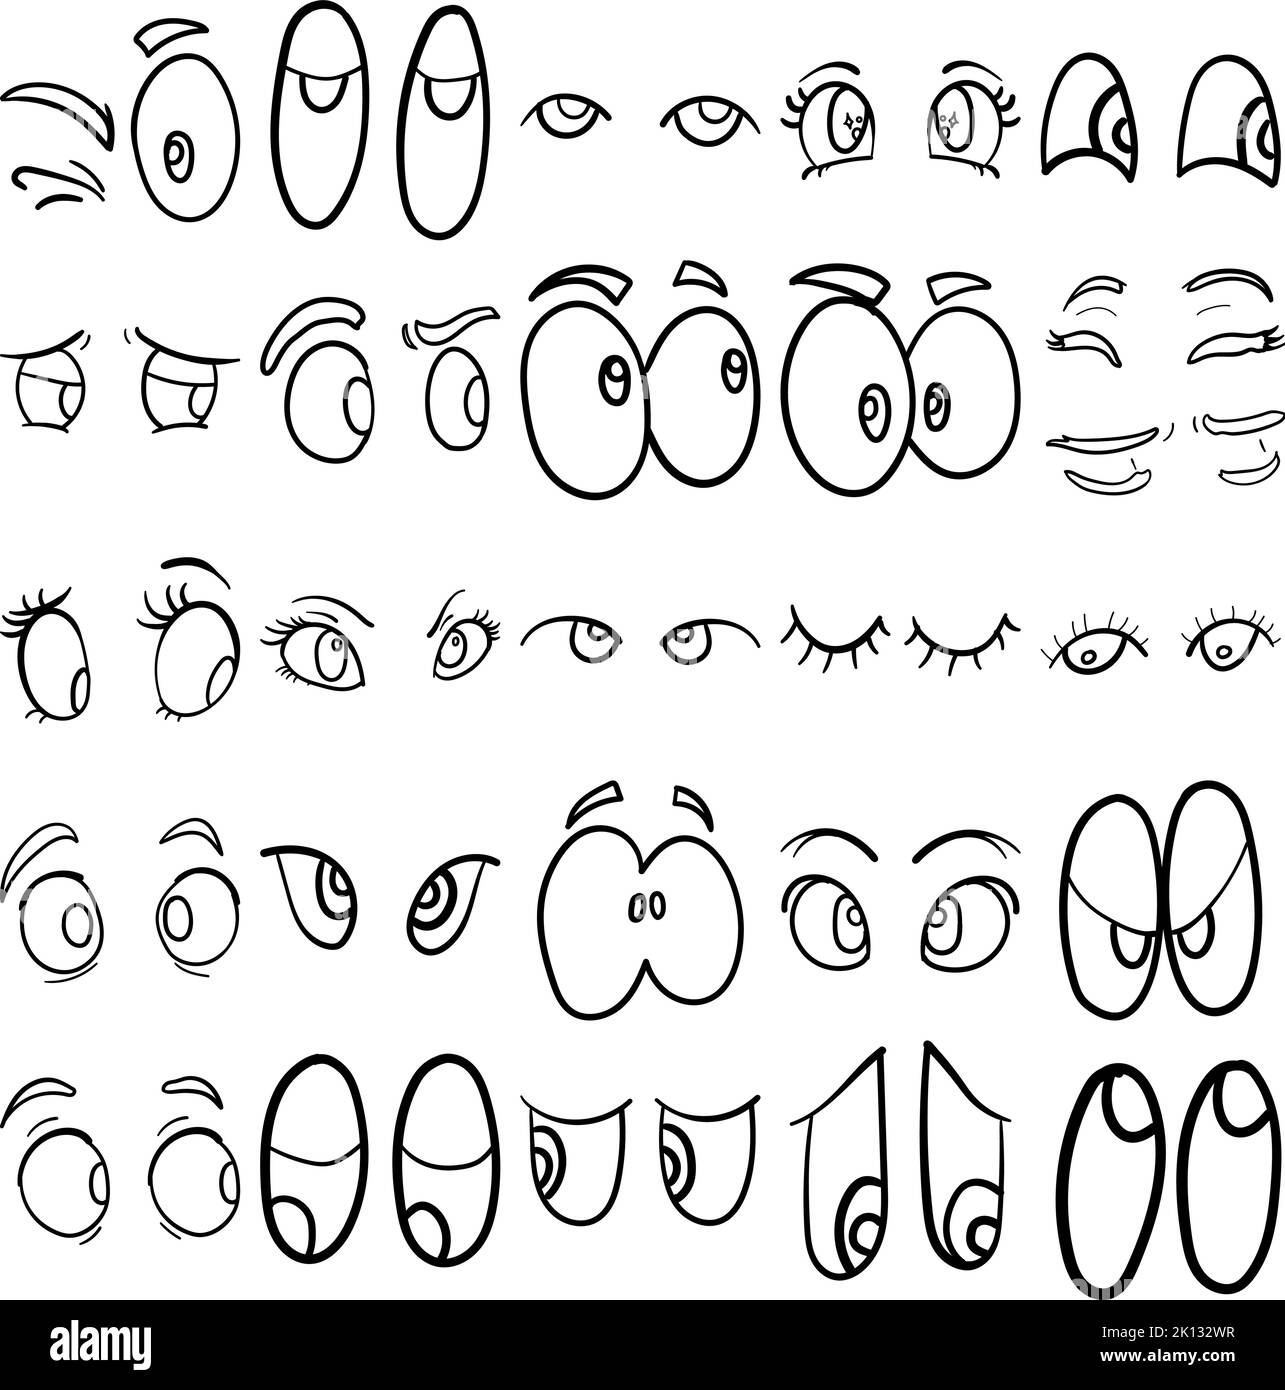 Occhi disegnati a mano Doodle Line Art Outline Set contenente occhi, ottica, espressione degli occhi, linguaggio del corpo degli occhi, sguardo in alto, Guardando verso il basso, guardando lateralmente Illustrazione Vettoriale